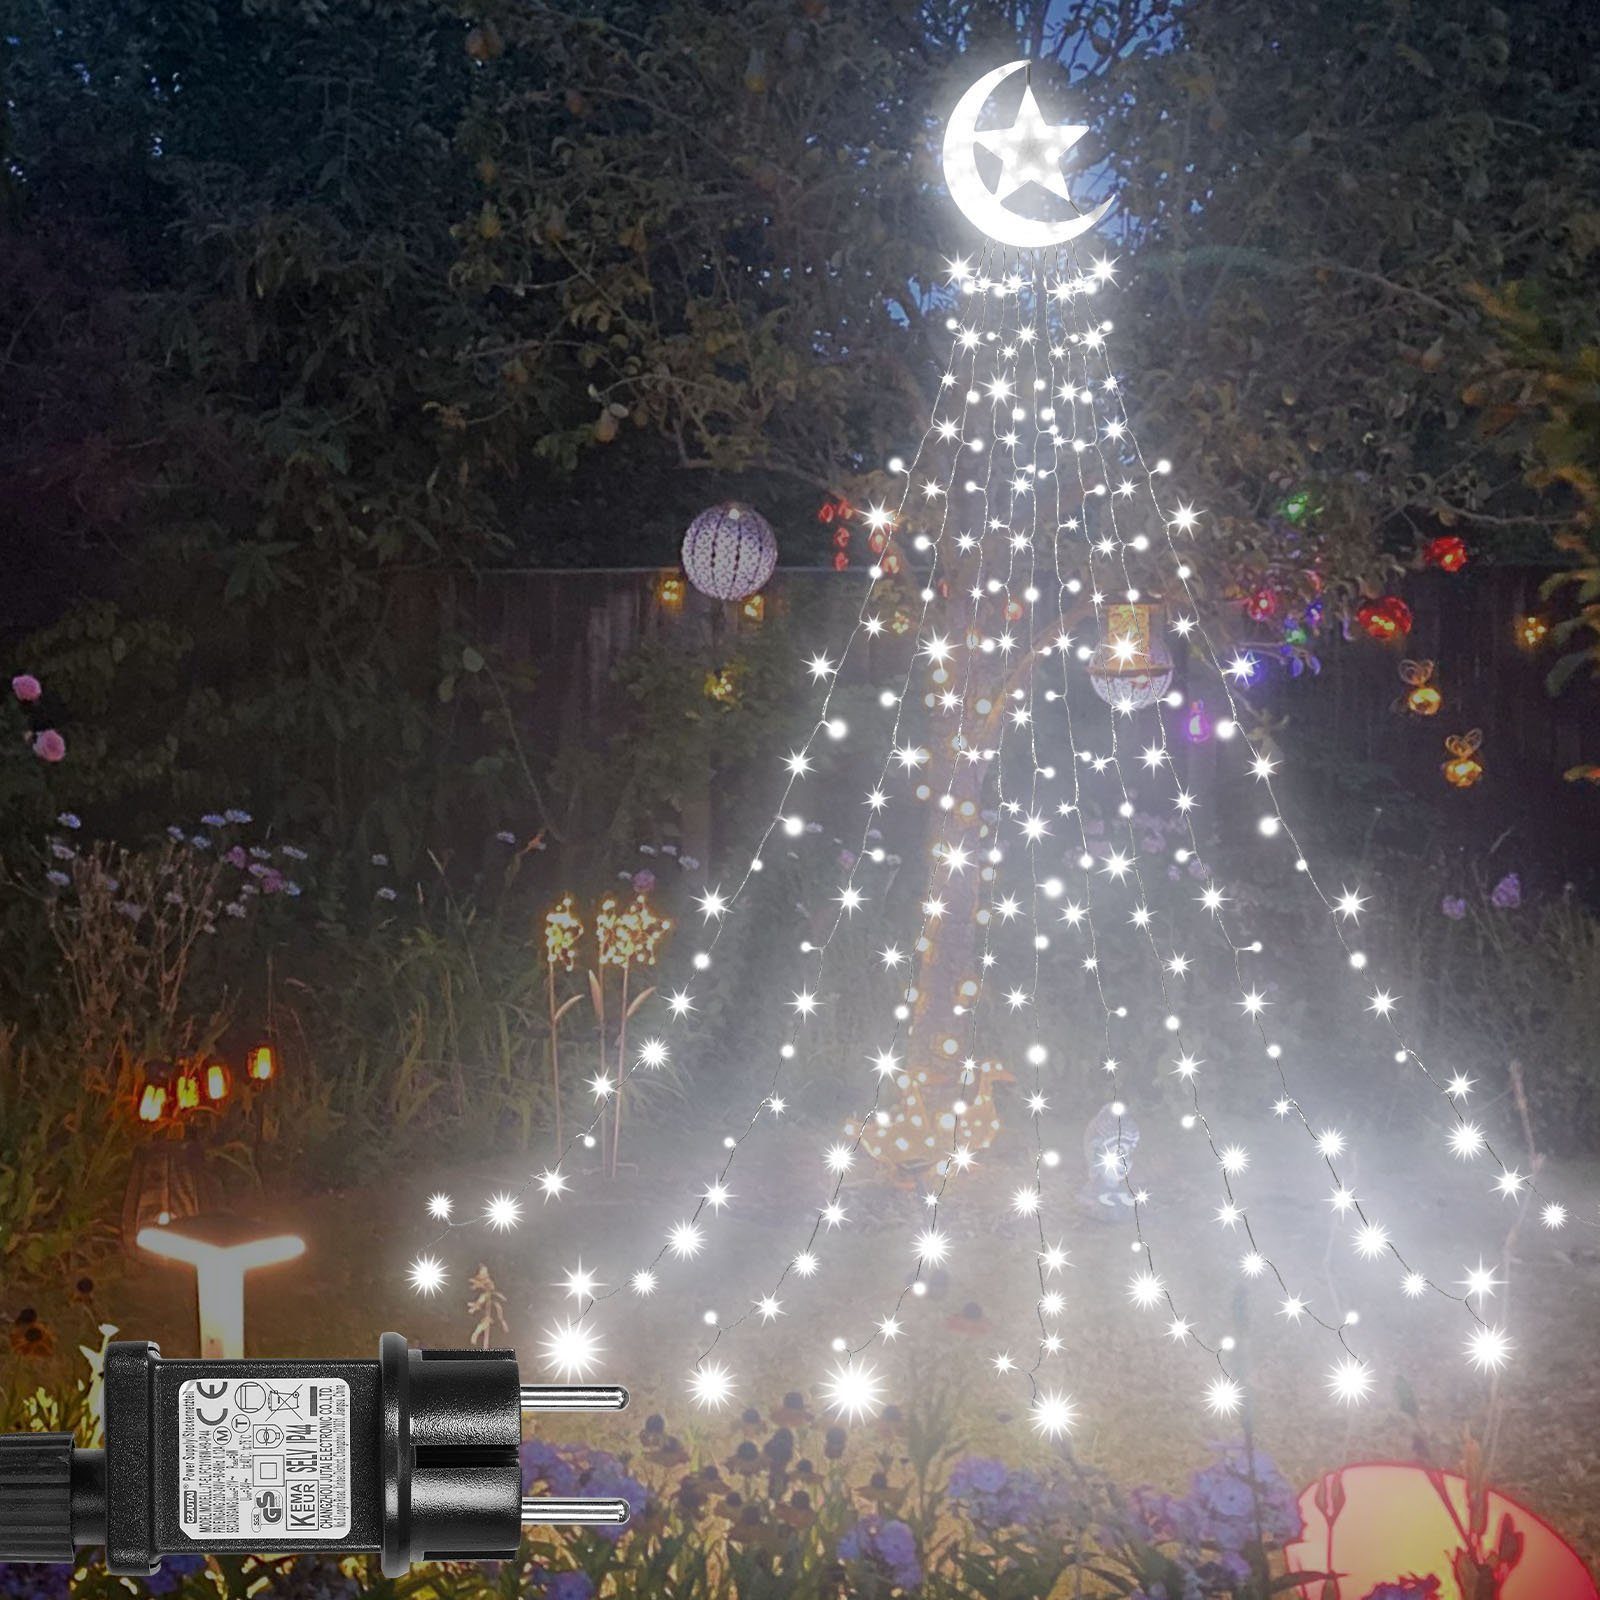 Rosnek LED-Lichtervorhang 8 Modi, wasserdicht, für Dach Innenhof Ramadan  Weihnachtsdeko, 350-flammig, Timer;Wasserfall Baum Lichter; mit Topper  Mondstern,Speicherfunktion